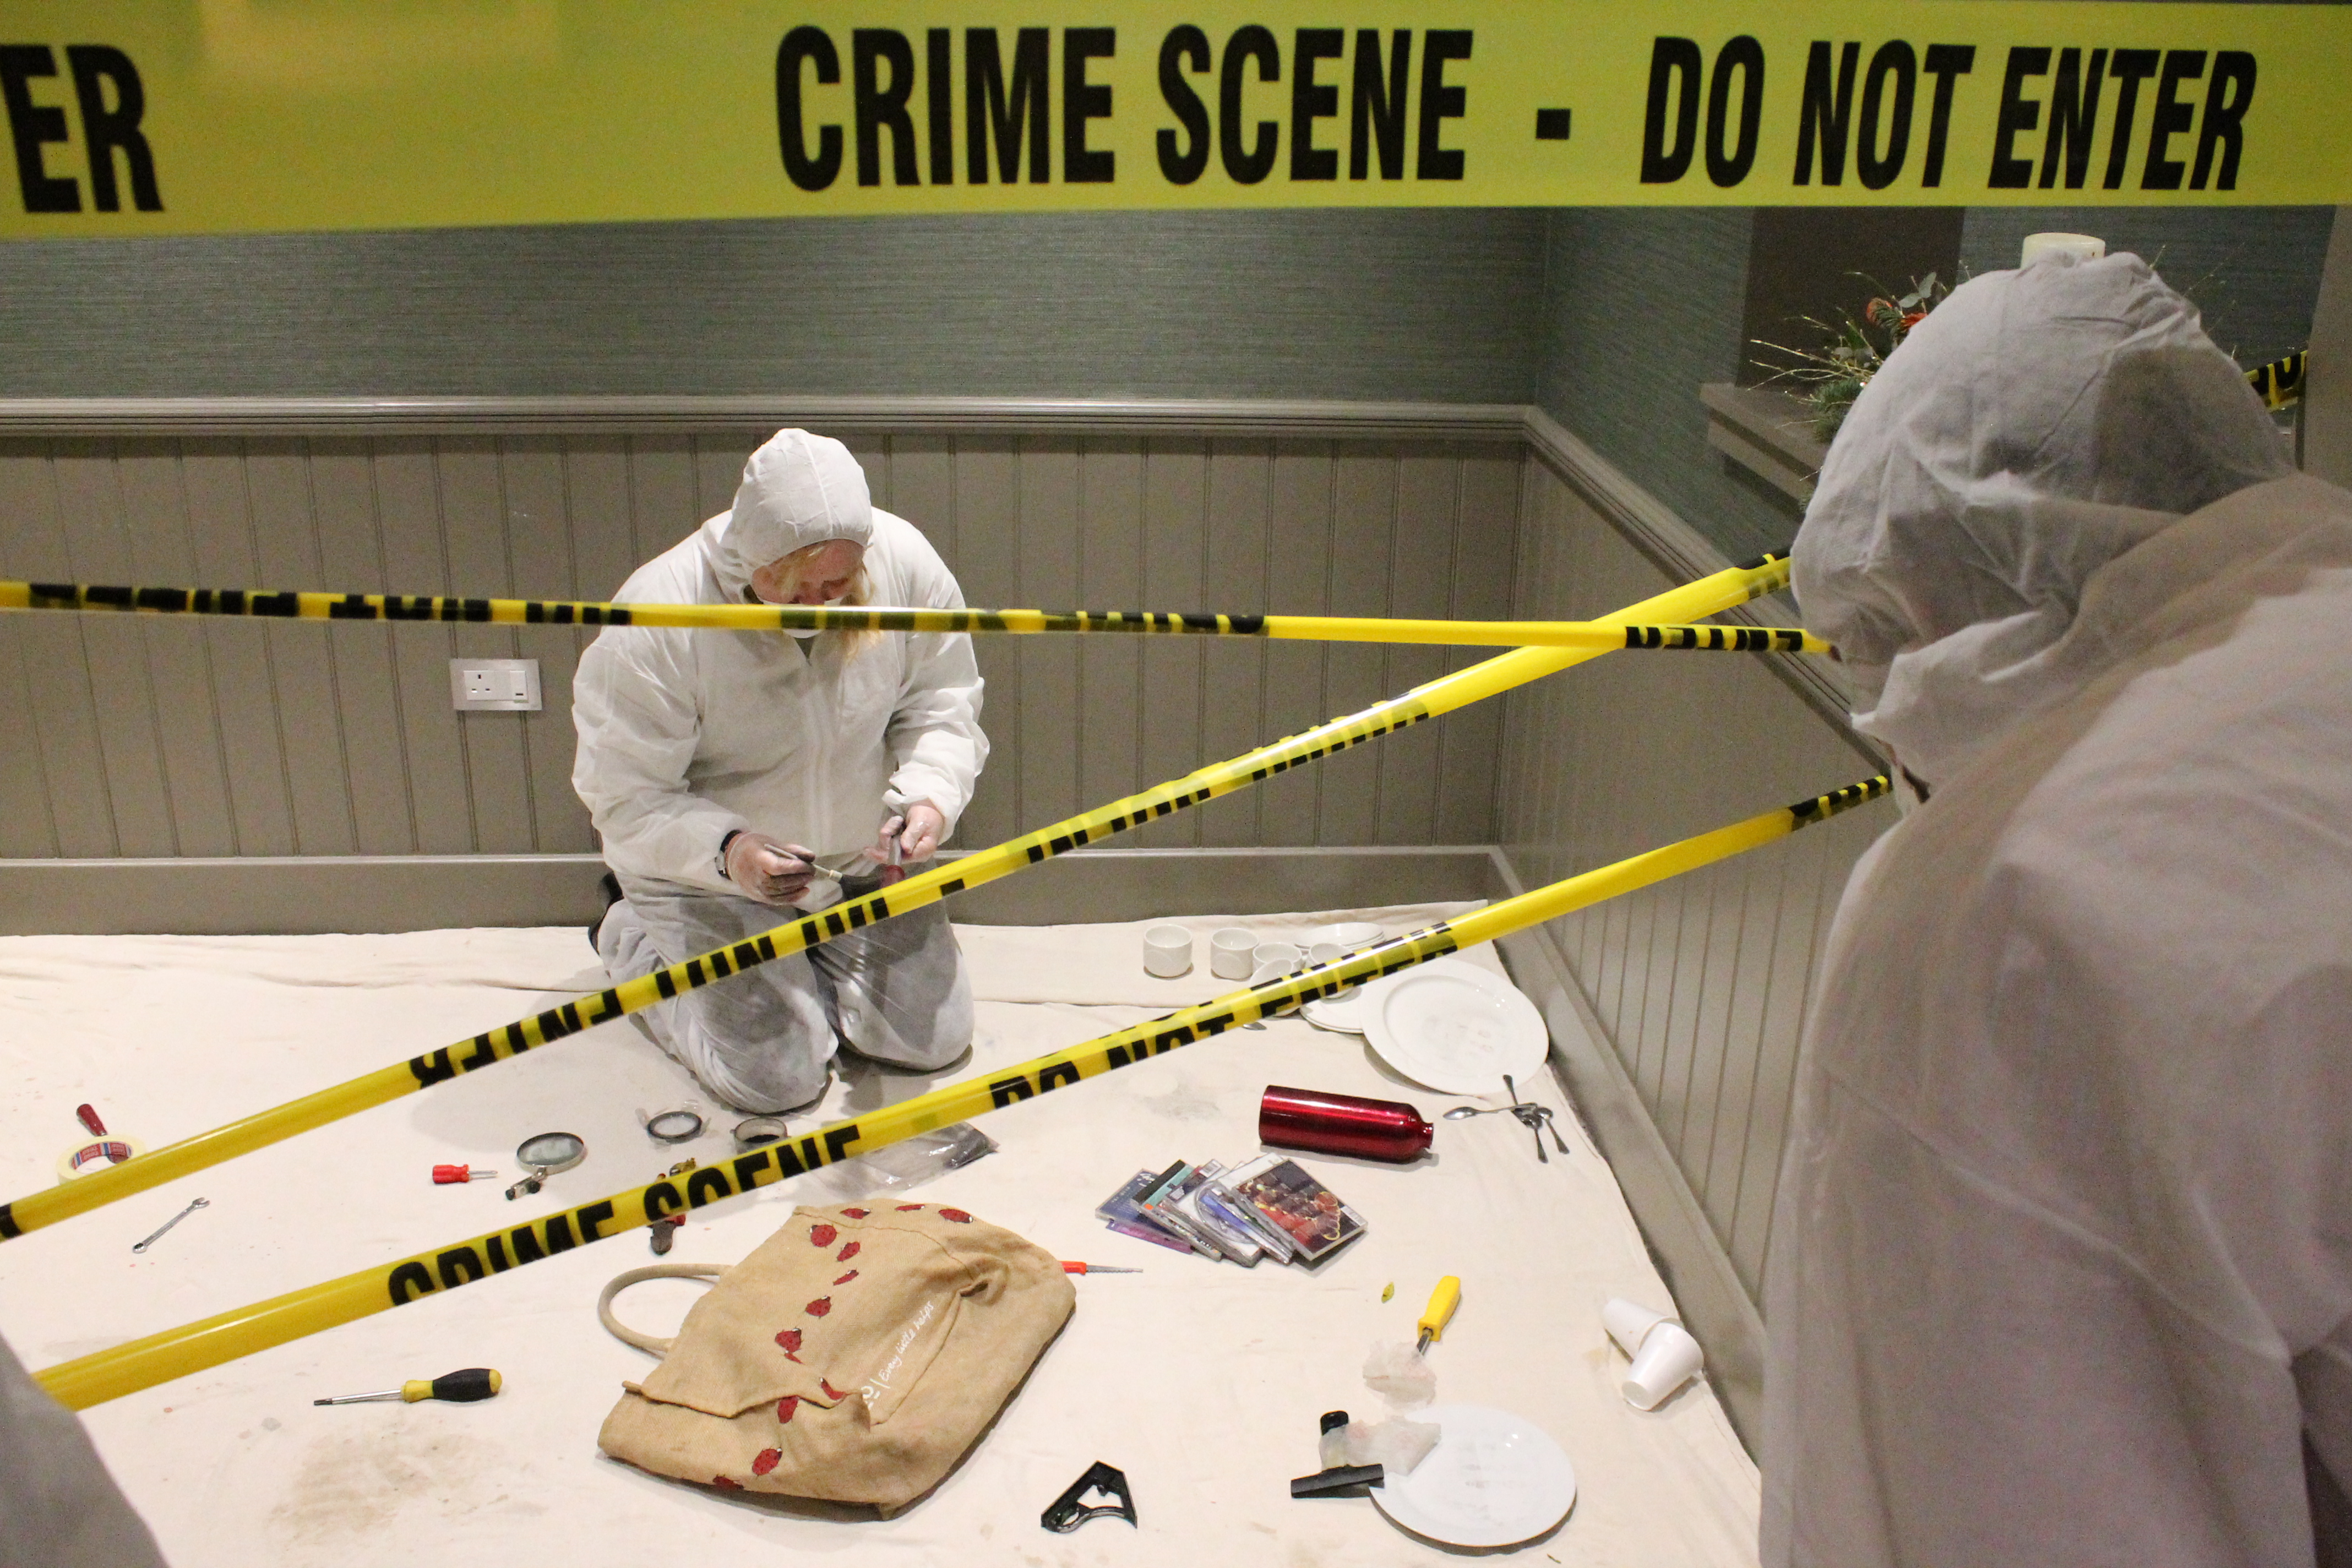 Crime scene investigation photo